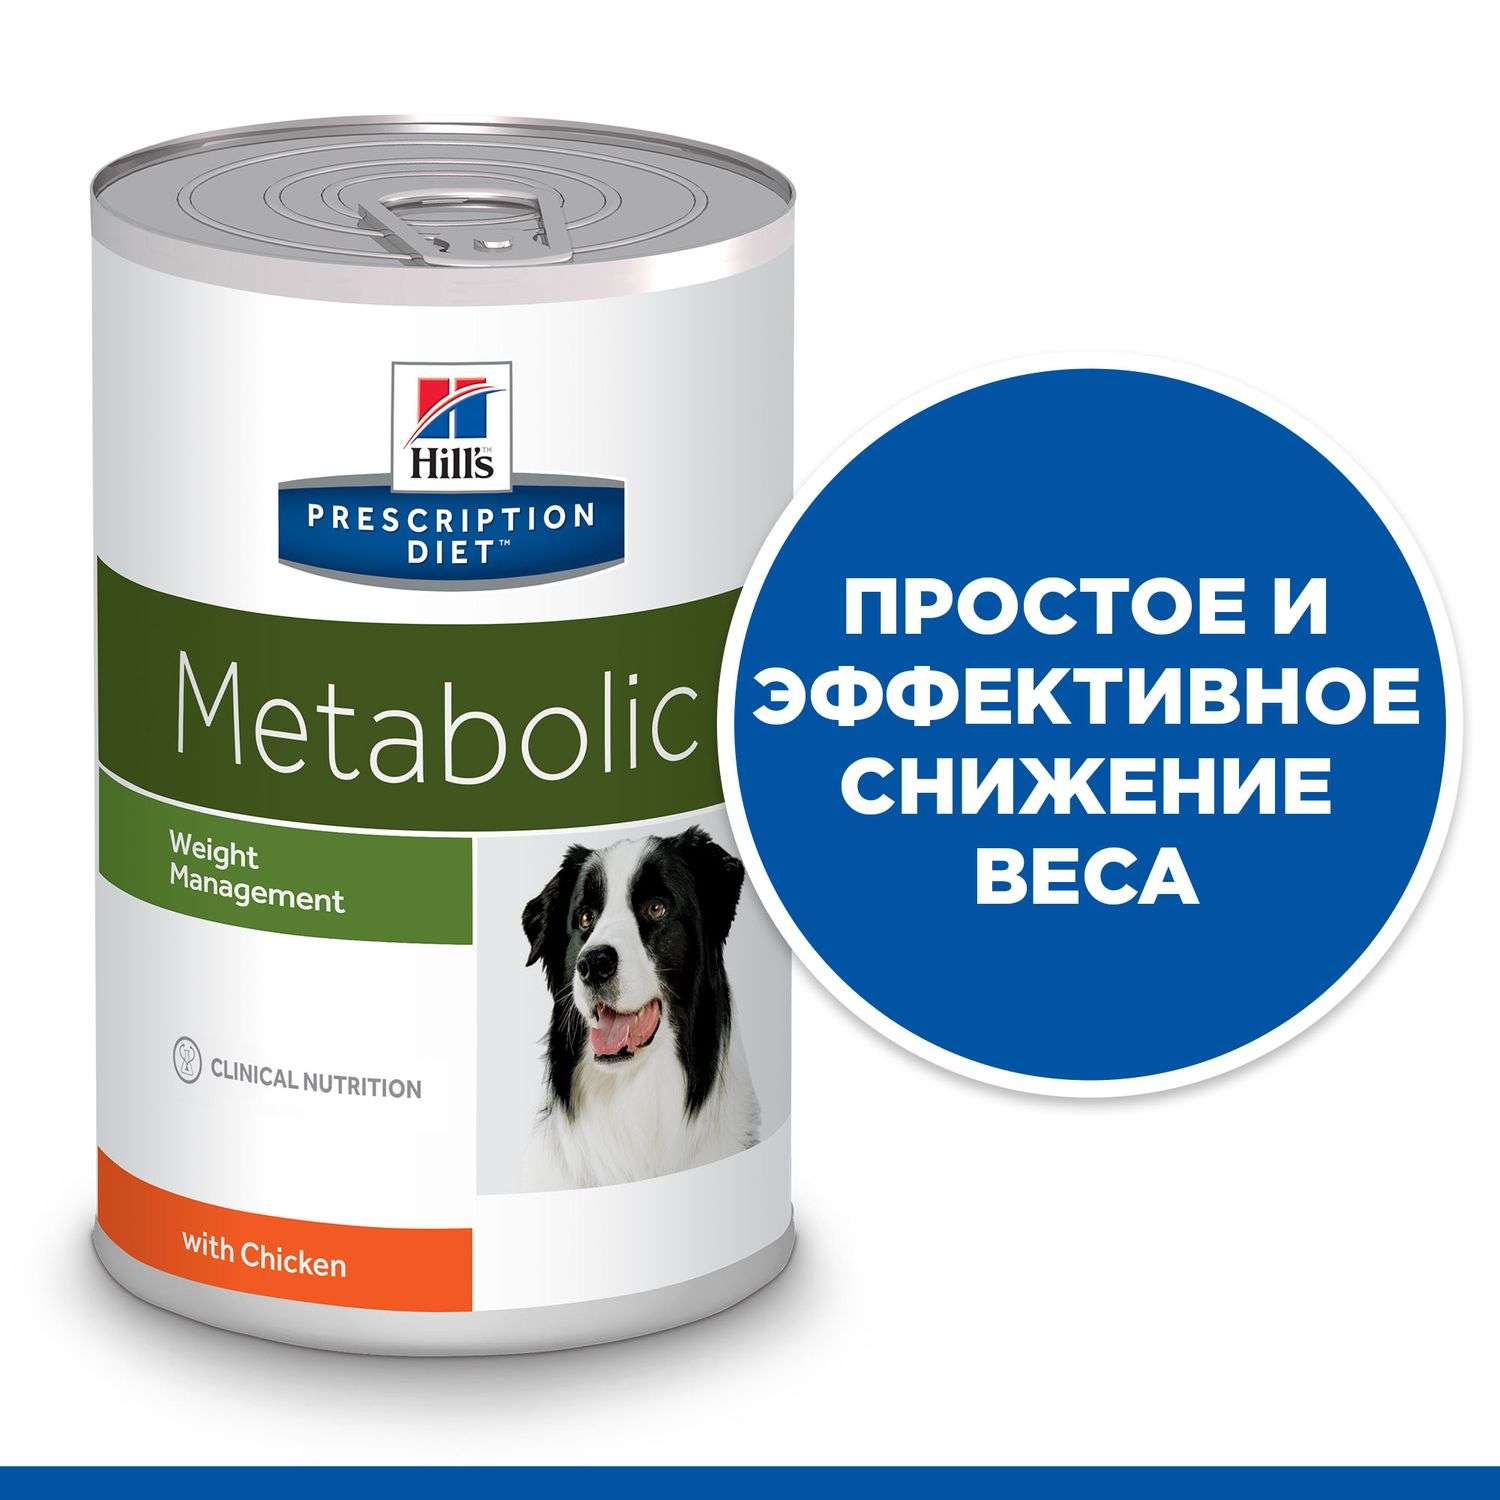 Корм для собак HILLS 370г Prescription Diet Metabolic Weight Management для оптимального веса с курицей консервированный - фото 4